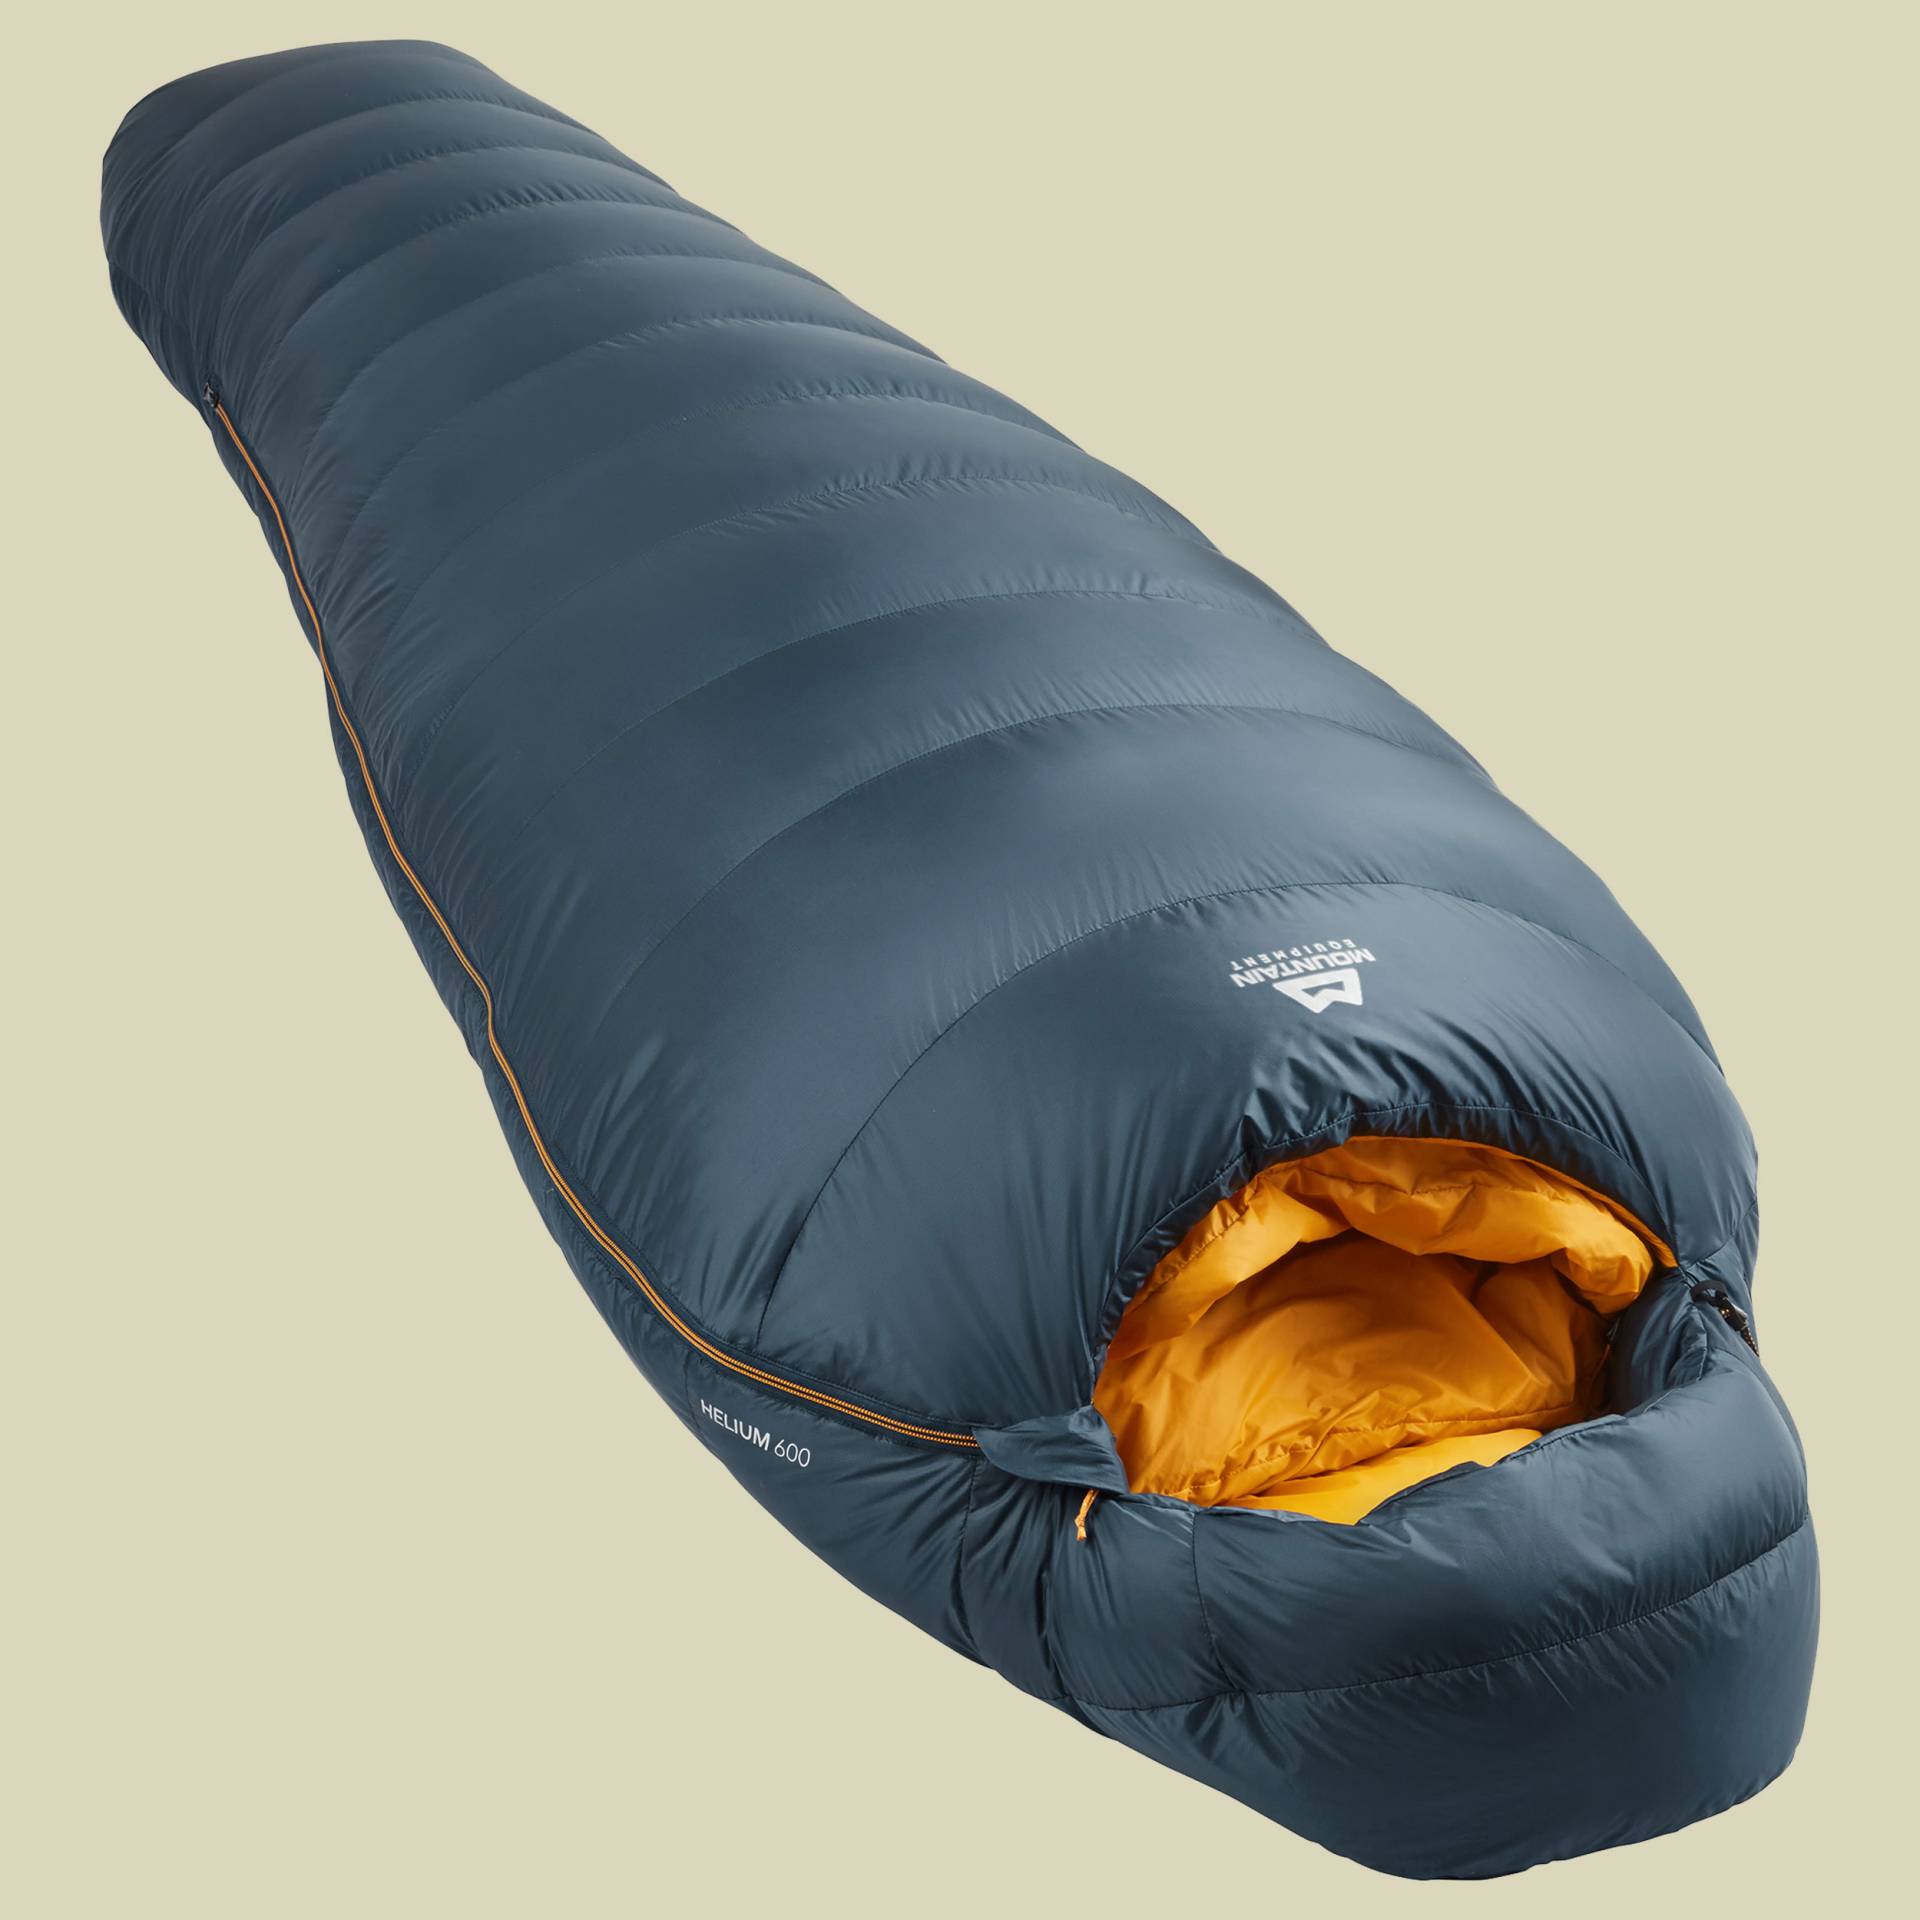 Helium 600 Schlafsack Körpergröße 200 cm cm Farbe majolica blue, Schlafsack Reissverschluss links von Mountain Equipment